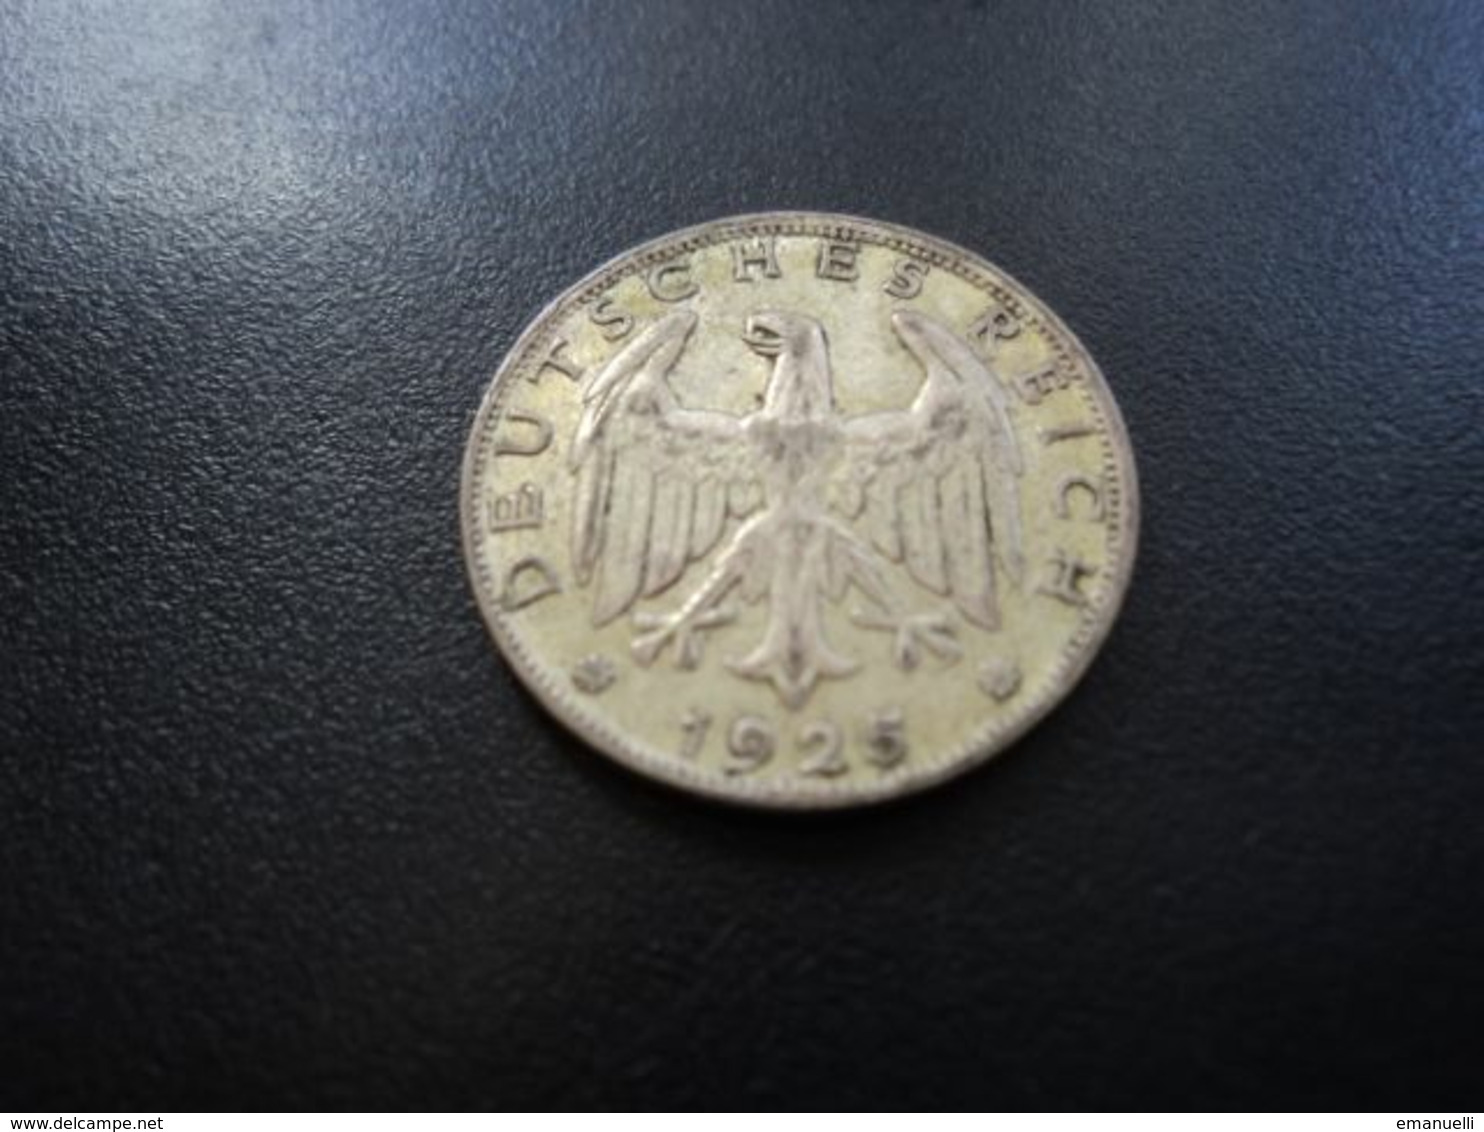 ALLEMAGNE * : 1 REICHSMARK   1925 F    KM 44       TTB+ - 1 Mark & 1 Reichsmark